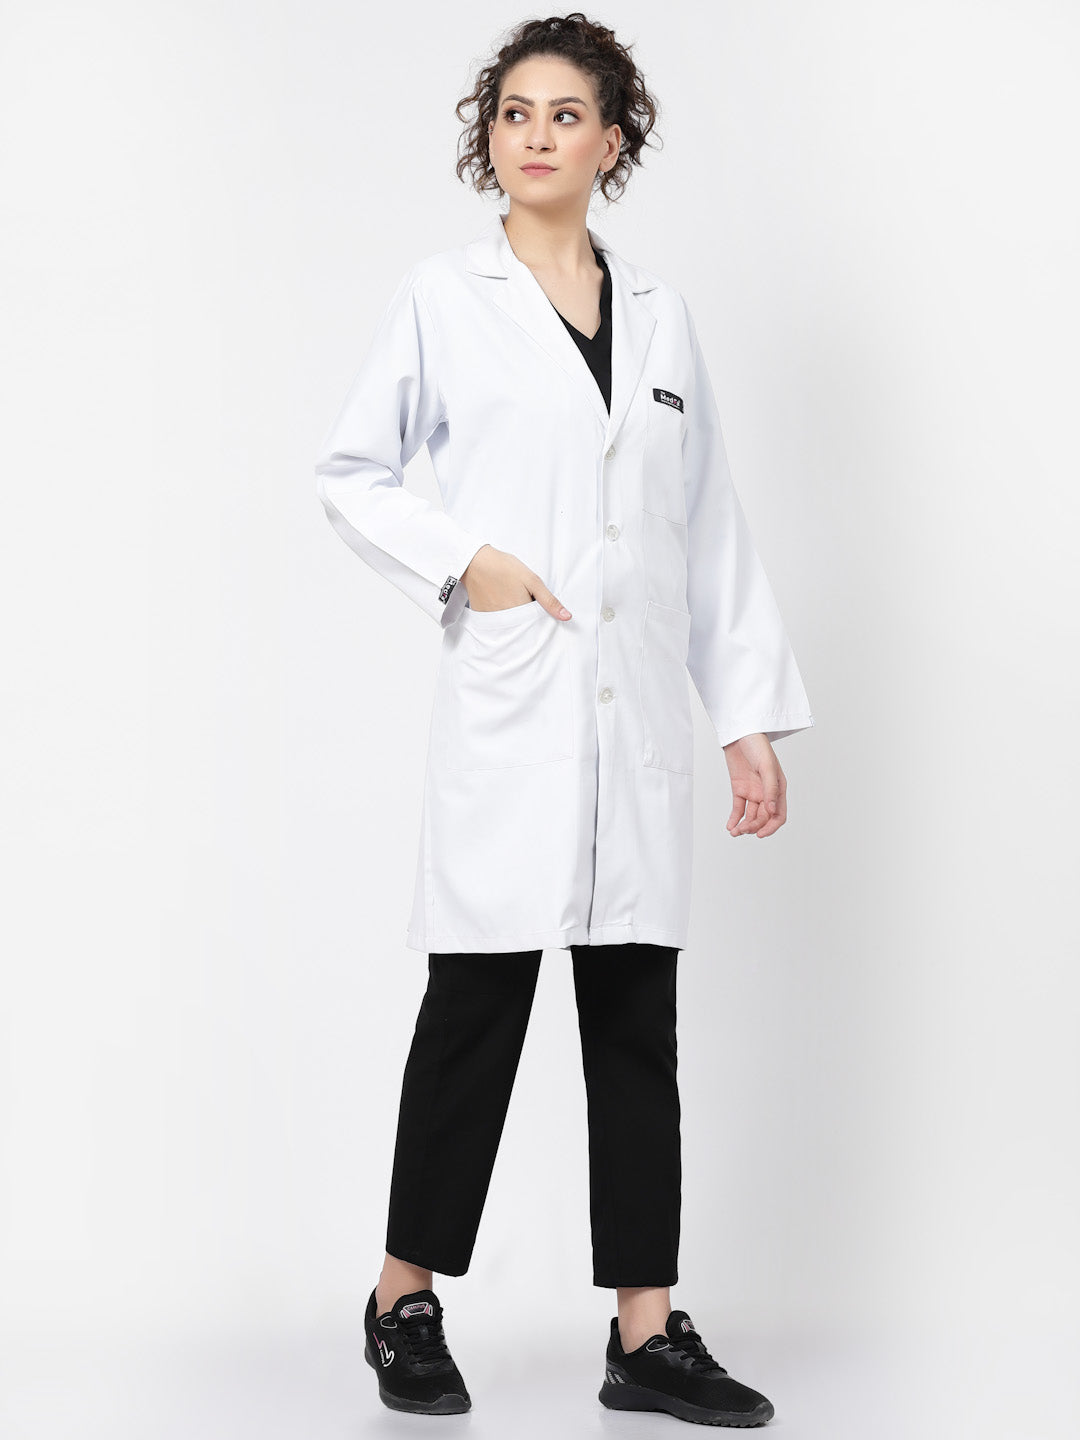 MedFa Long Lab Coat - (Women's) - TheMedfa